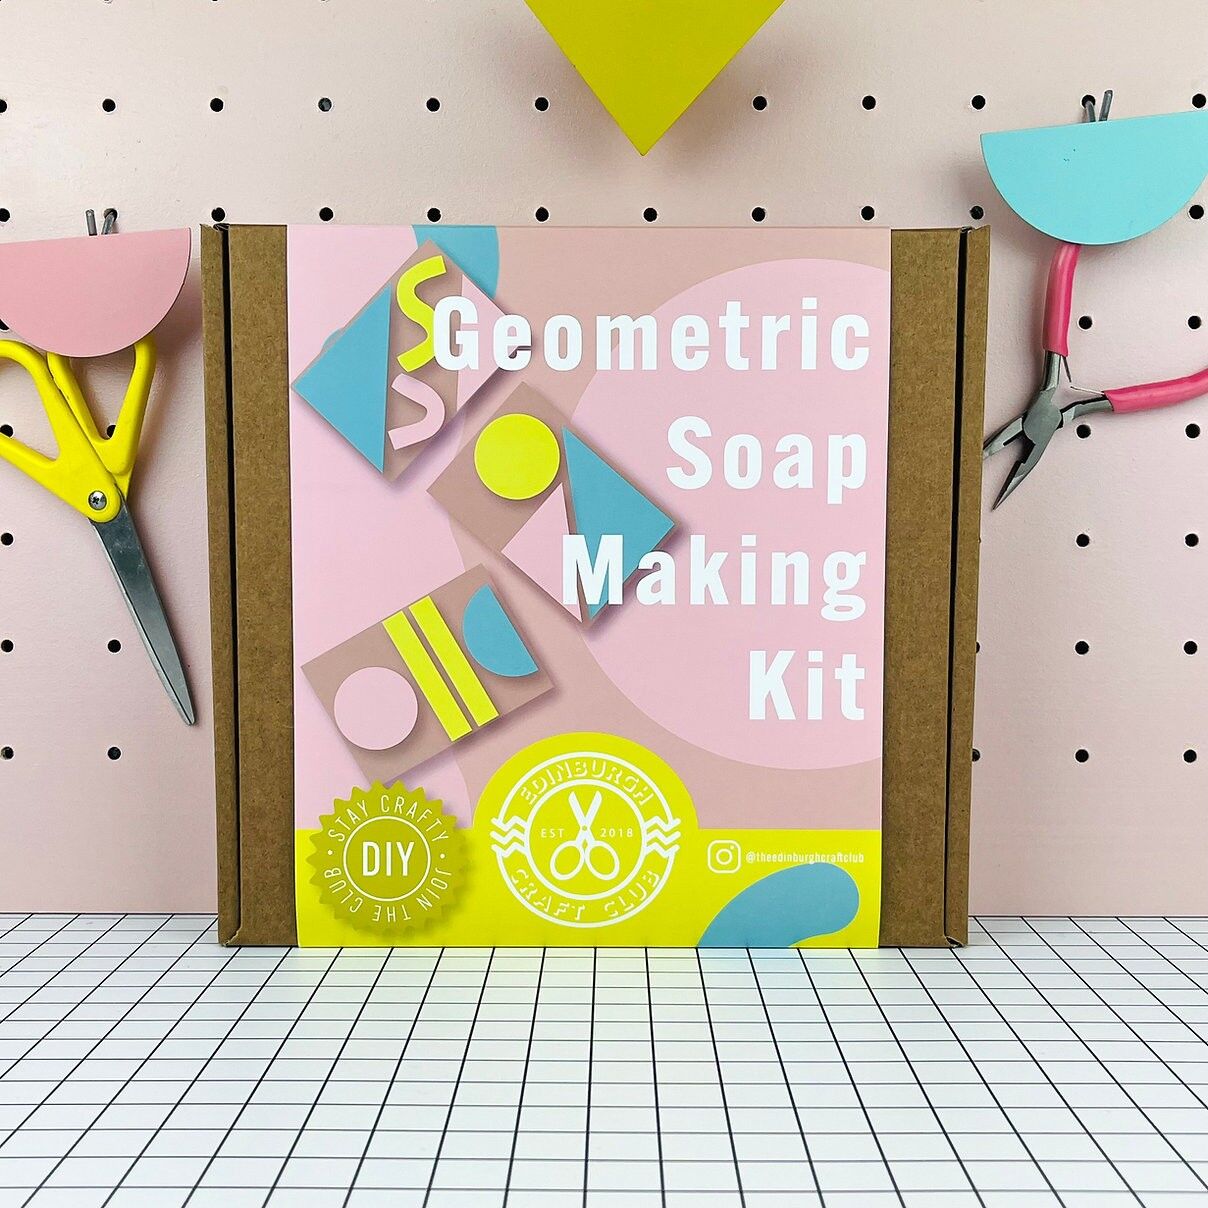 Kit de fabrication de savon géométrique The Edinburgh Craft Club